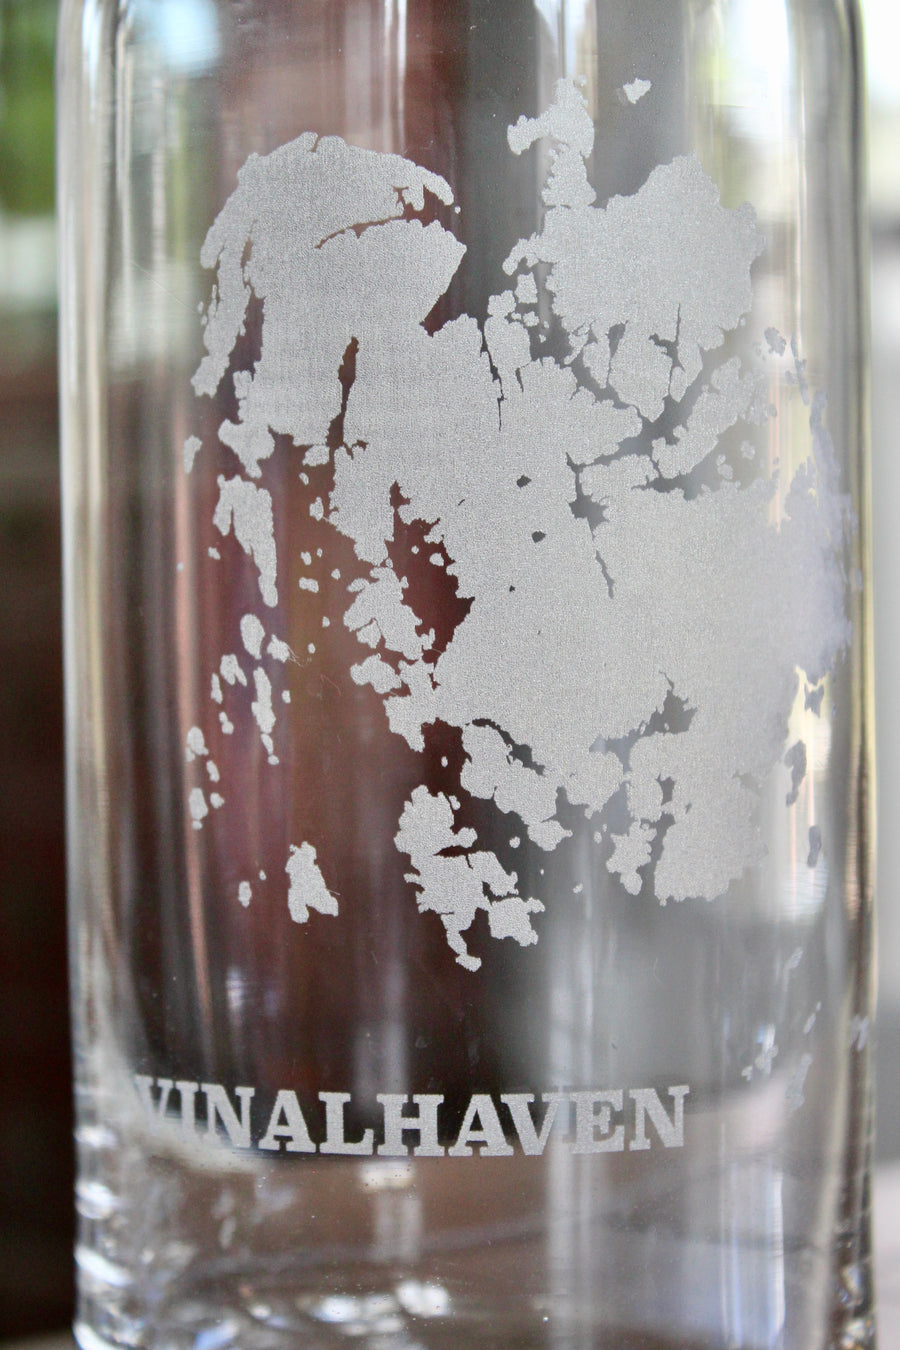 Vinalhaven Engraved Glass Carafe